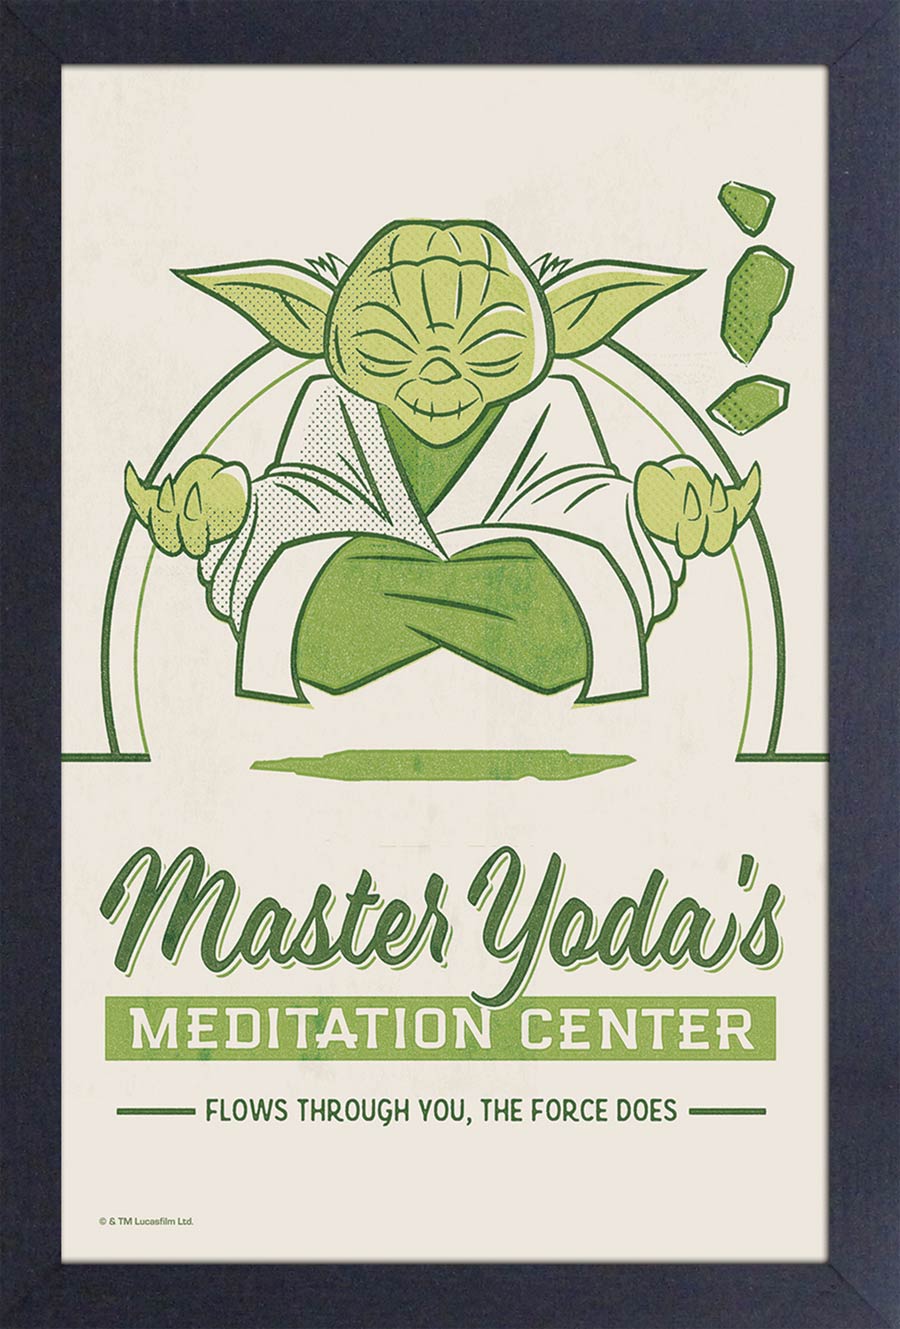 Star Wars 11x17 Framed Art Print - Master Yoda Meditation Center